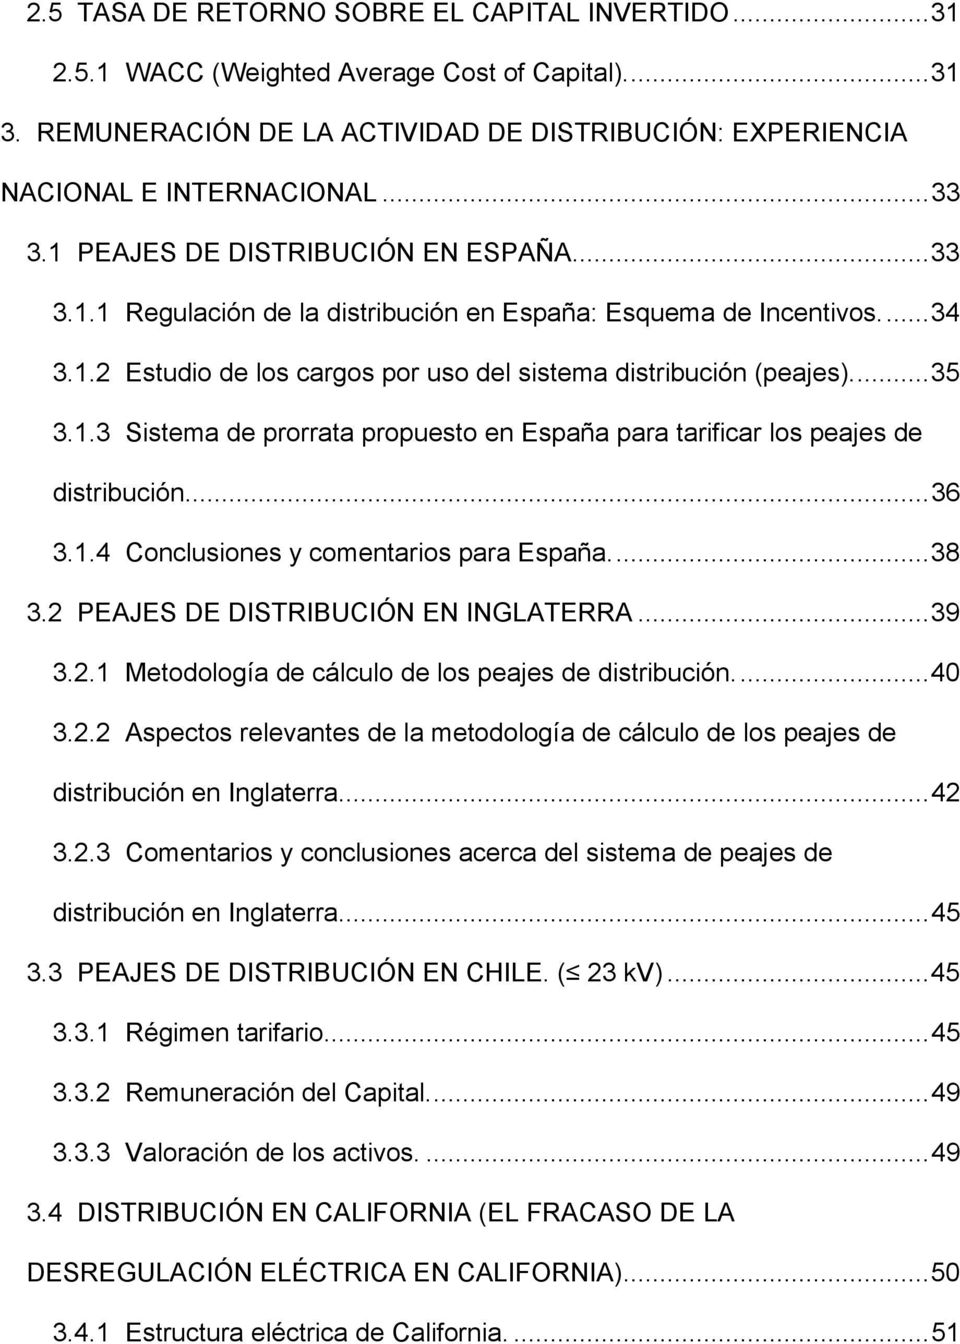 ..36 3.1.4 Conclusiones y comentarios para España...38 3.2 PEAJES DE DISTRIBUCIÓN EN INGLATERRA...39 3.2.1 Metodología de cálculo de los peajes de distribución...40 3.2.2 Aspectos relevantes de la metodología de cálculo de los peajes de distribución en Inglaterra.